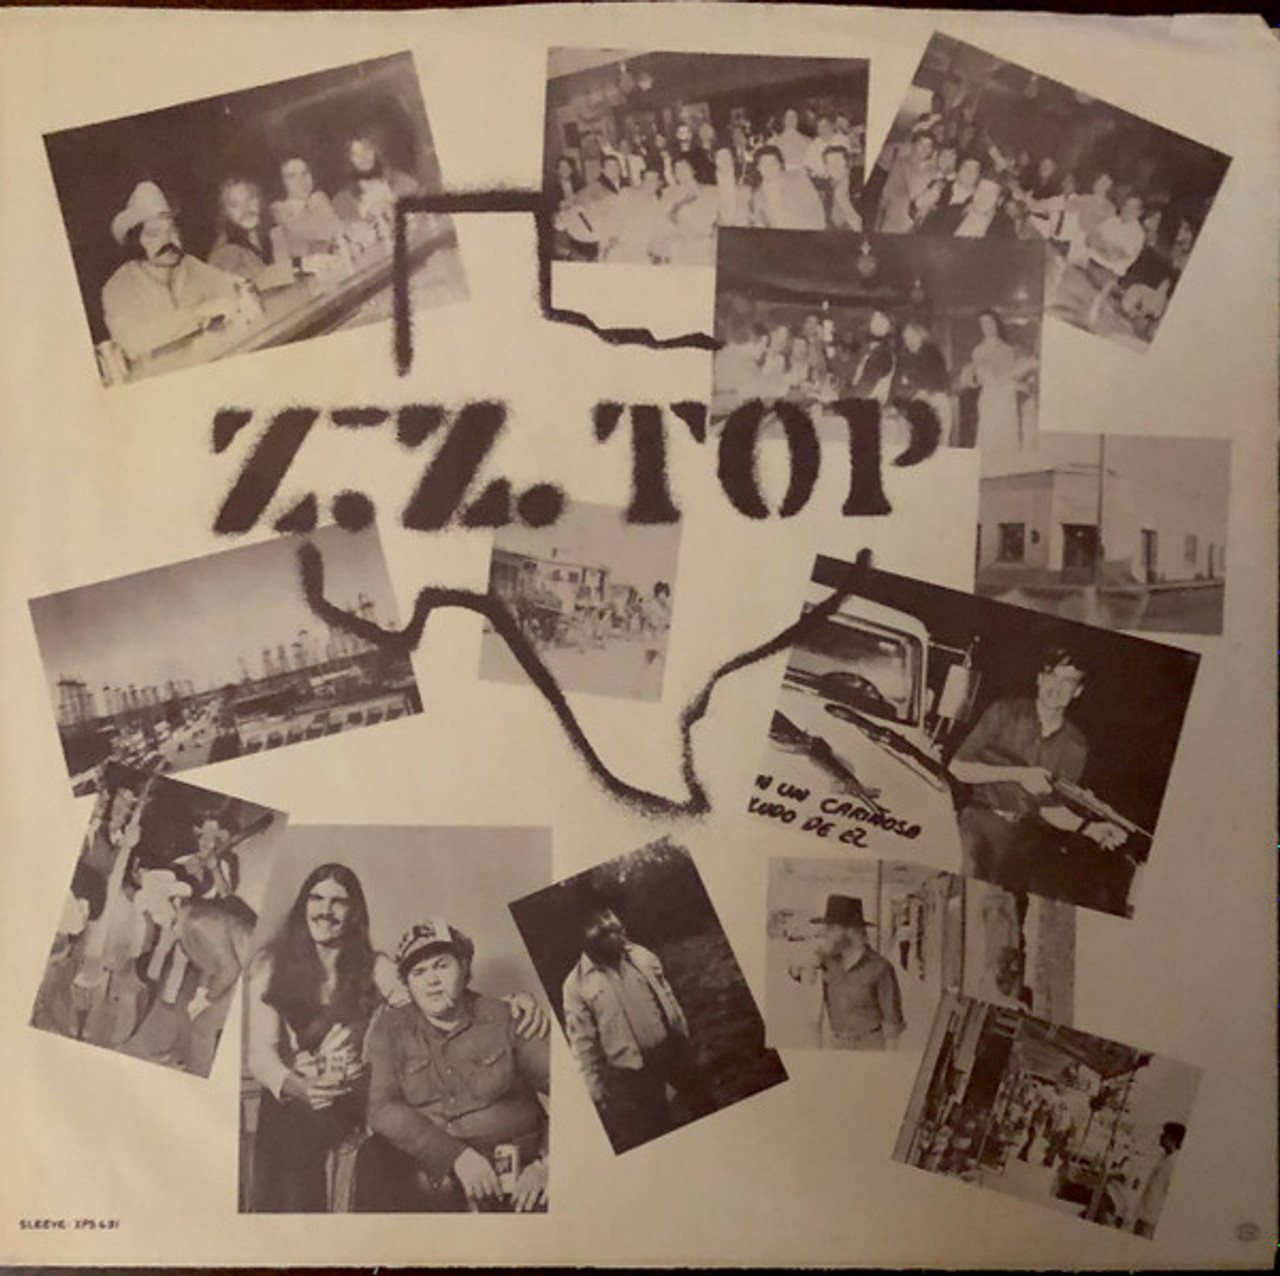 ZZ Top - Tres Hombres - Quadraphonic open reel tape, 4.0